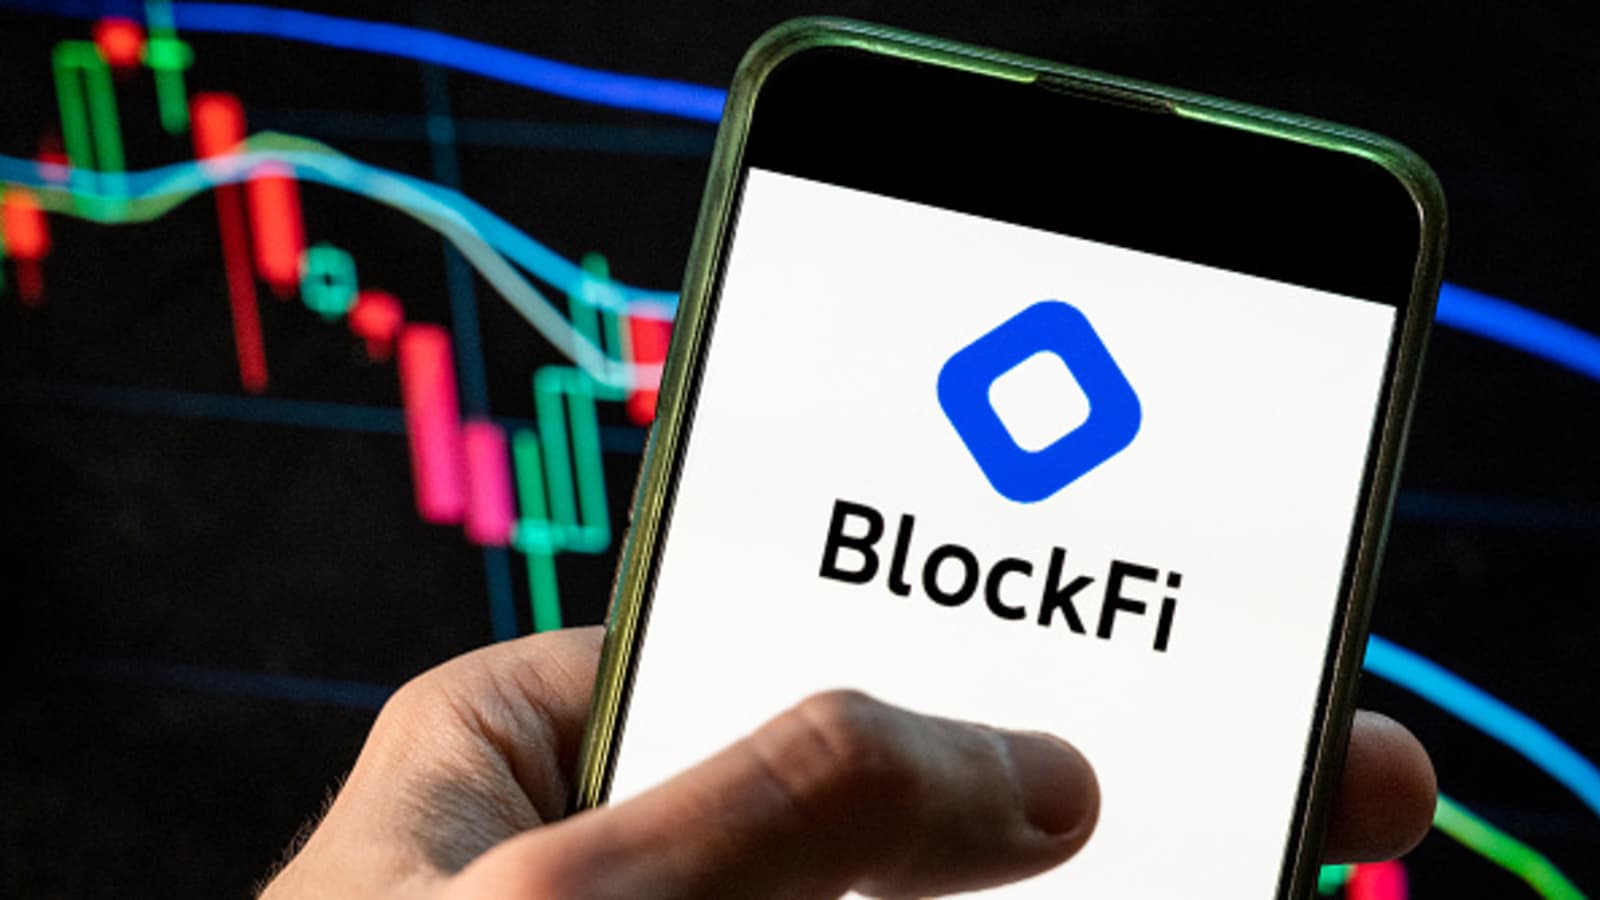 Blockfi Review